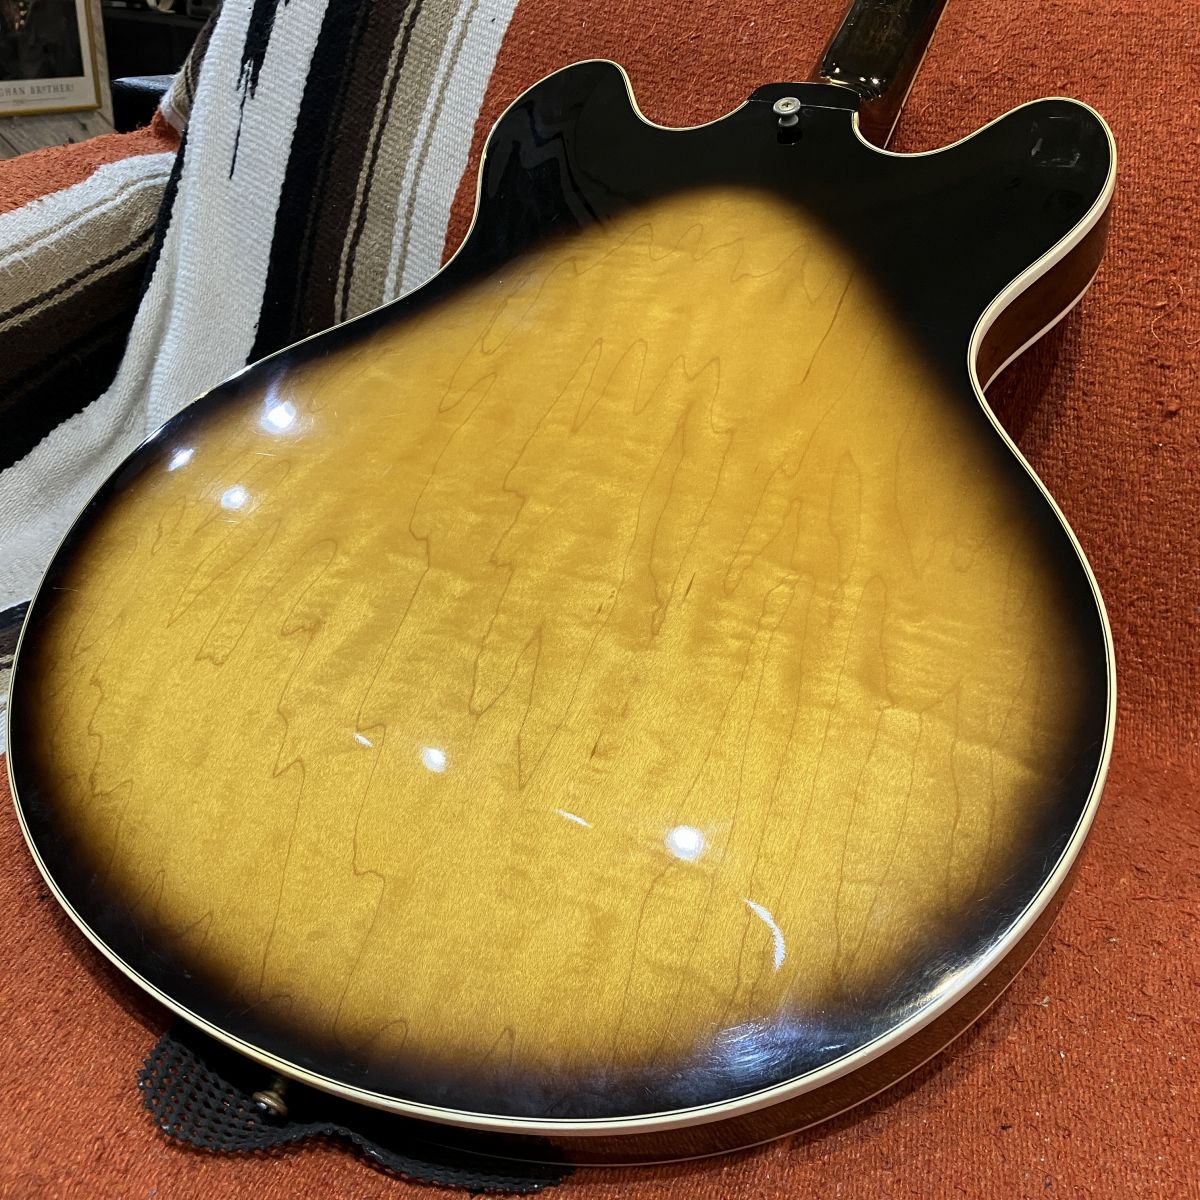 USED Gibson / Late1970s ES-355TD Sunburst [04]